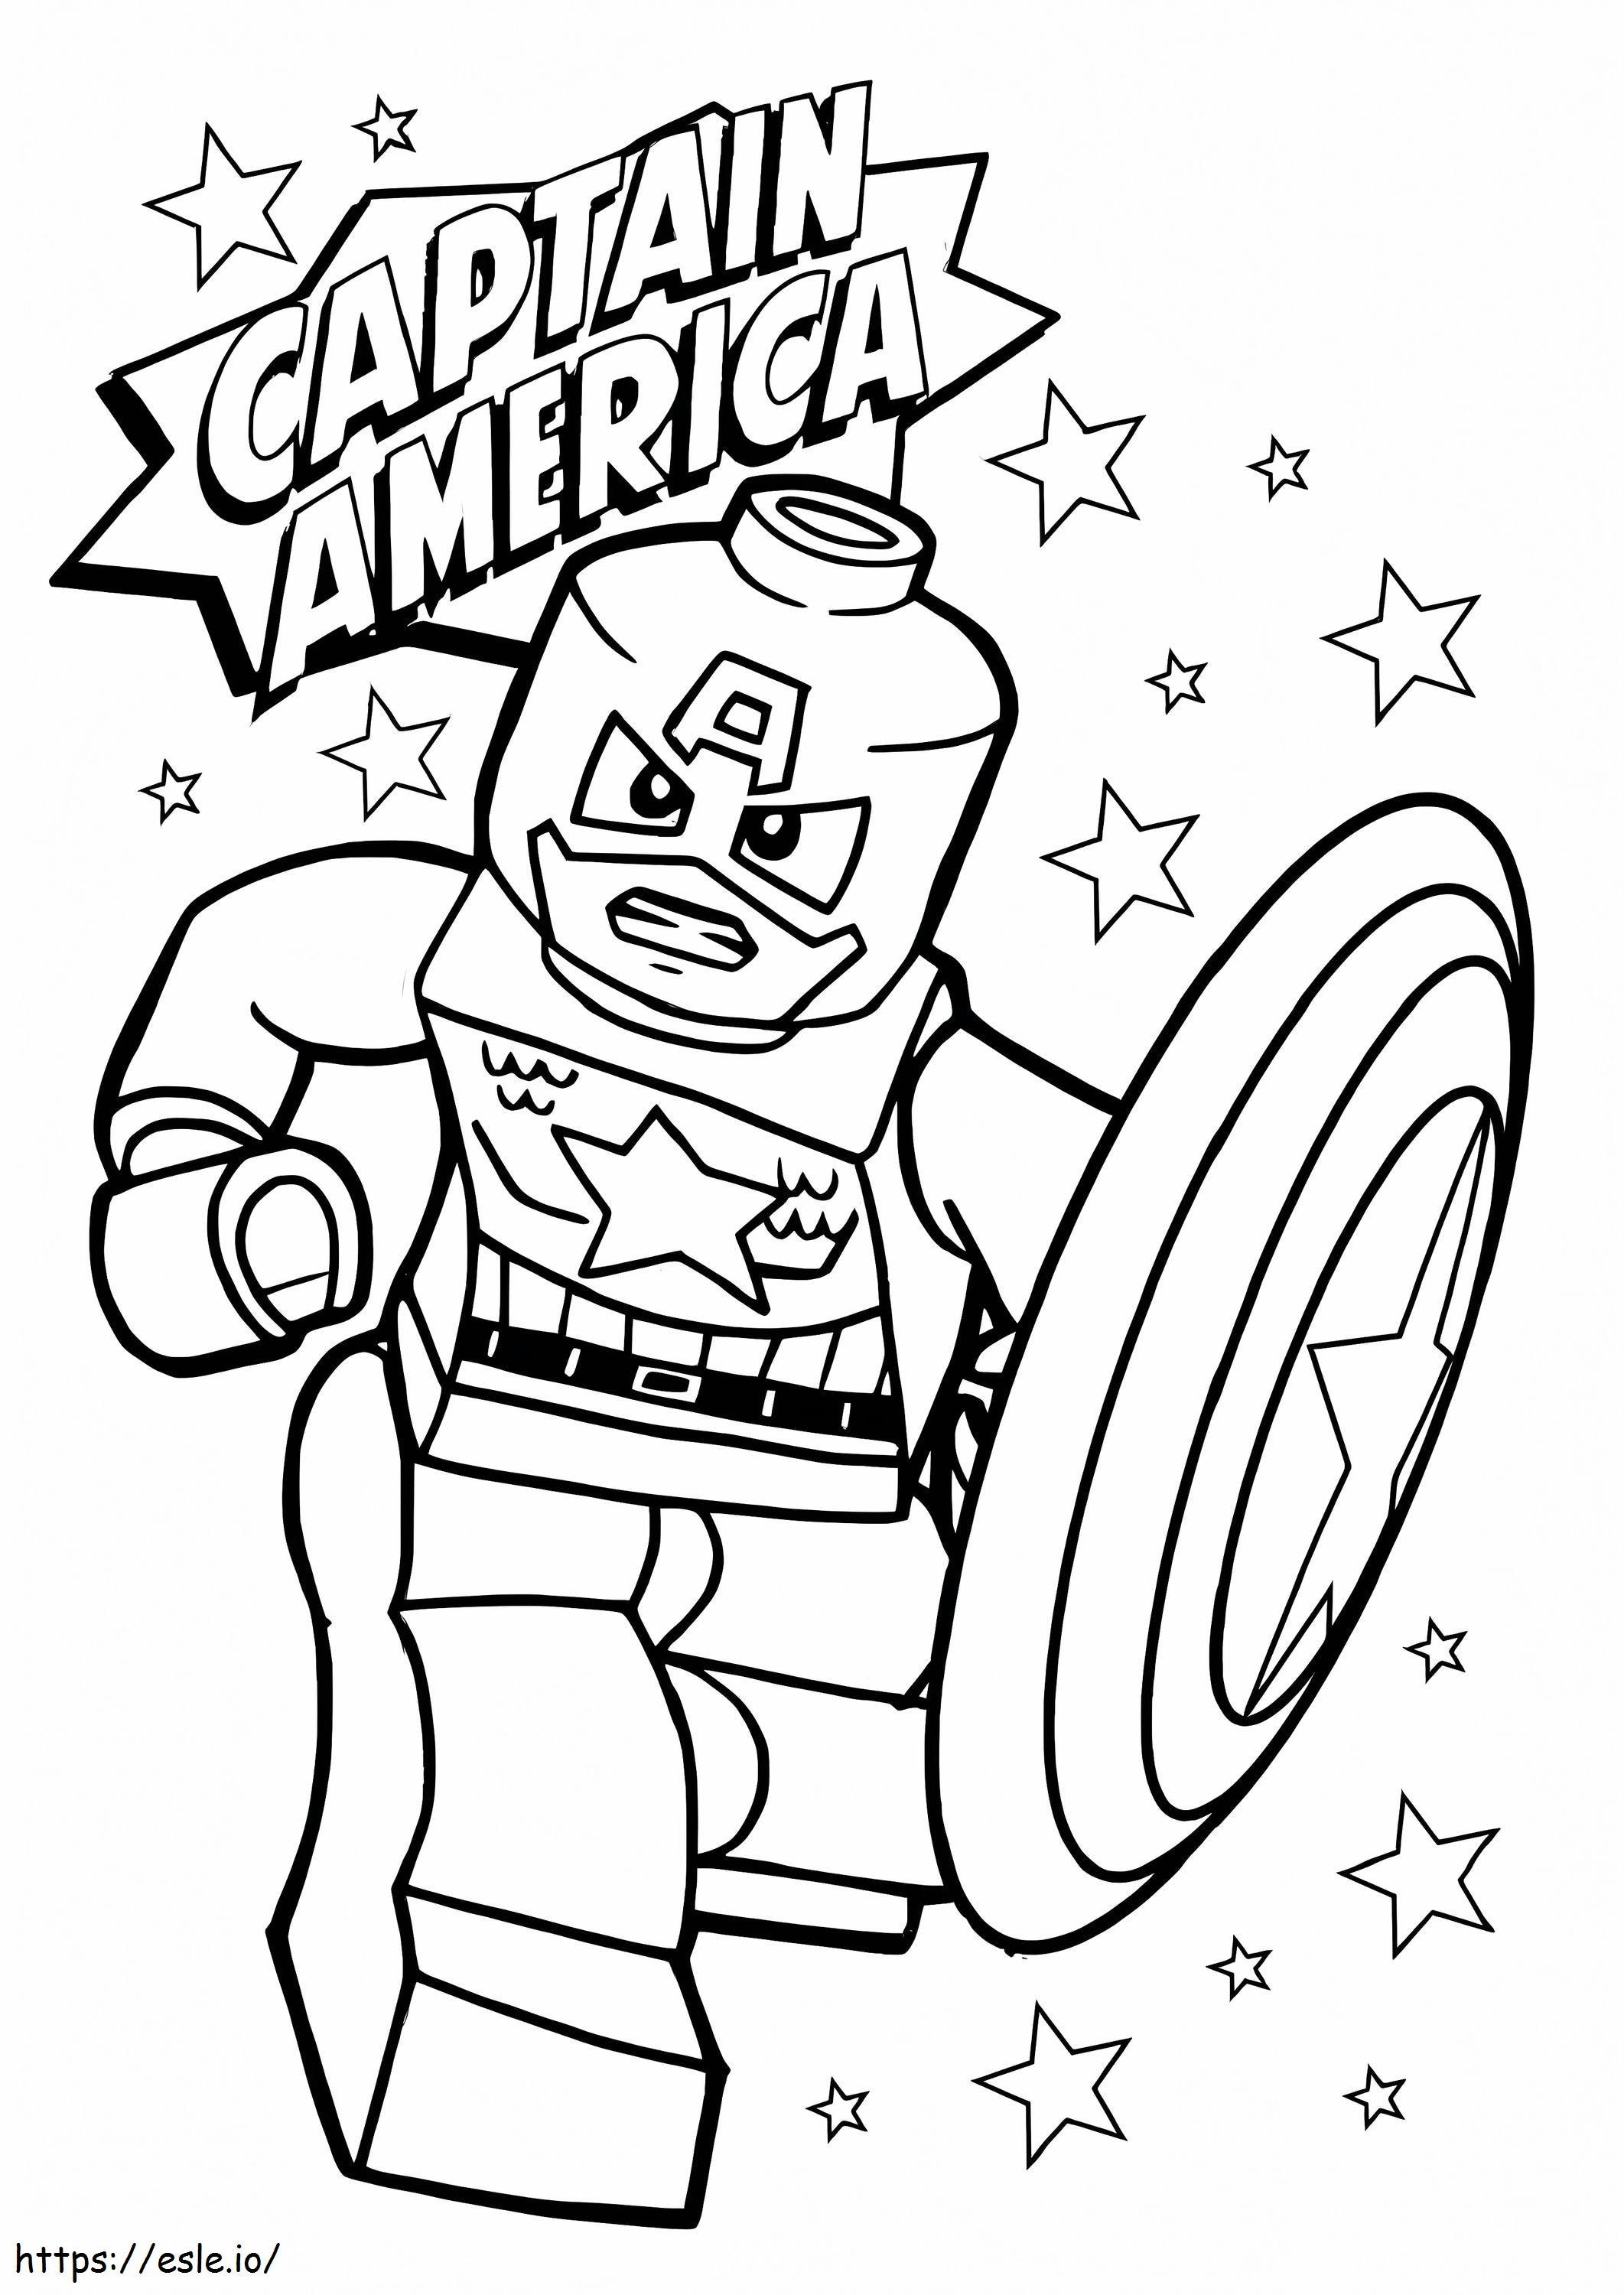 Wütender Lego Captain America mit Stern ausmalbilder